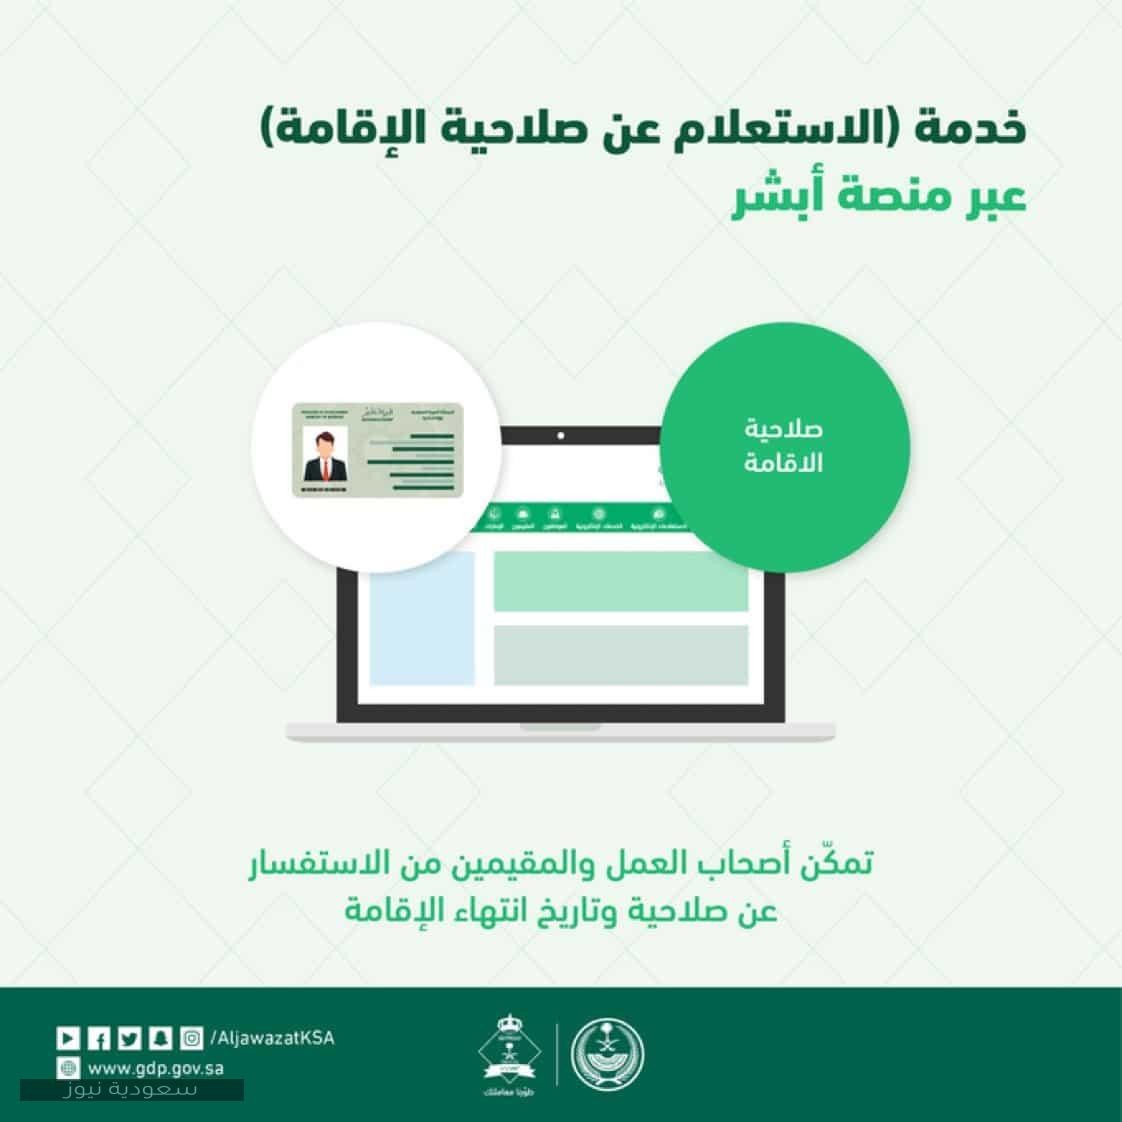 الاستعلام عن صلاحية الإقامة عبر وزارة العمل hrsd.gov.sa السعودية